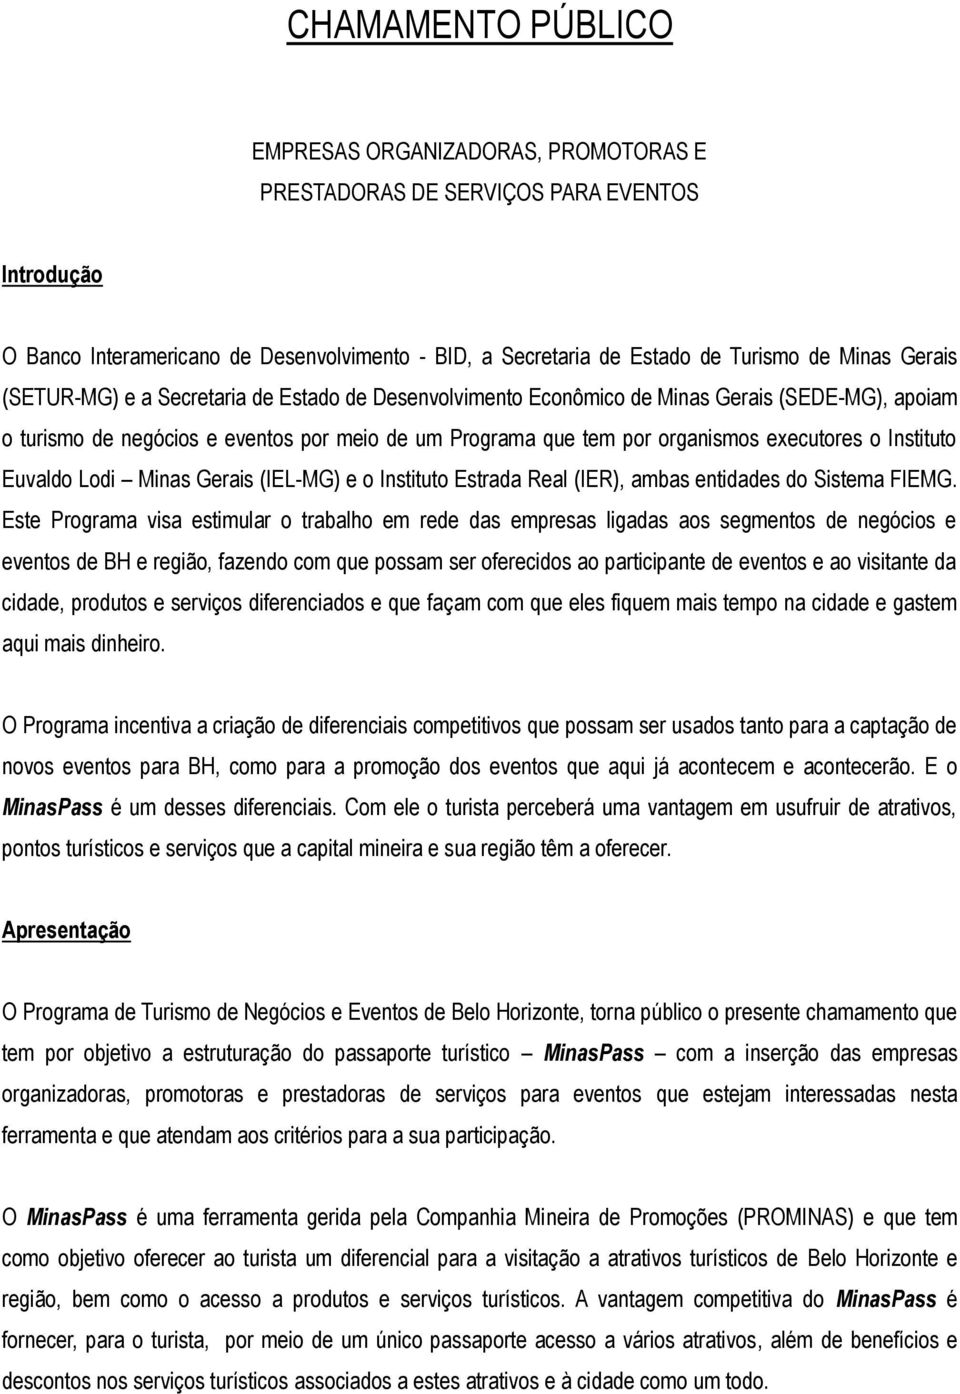 Instituto Euvaldo Lodi Minas Gerais (IEL-MG) e o Instituto Estrada Real (IER), ambas entidades do Sistema FIEMG.